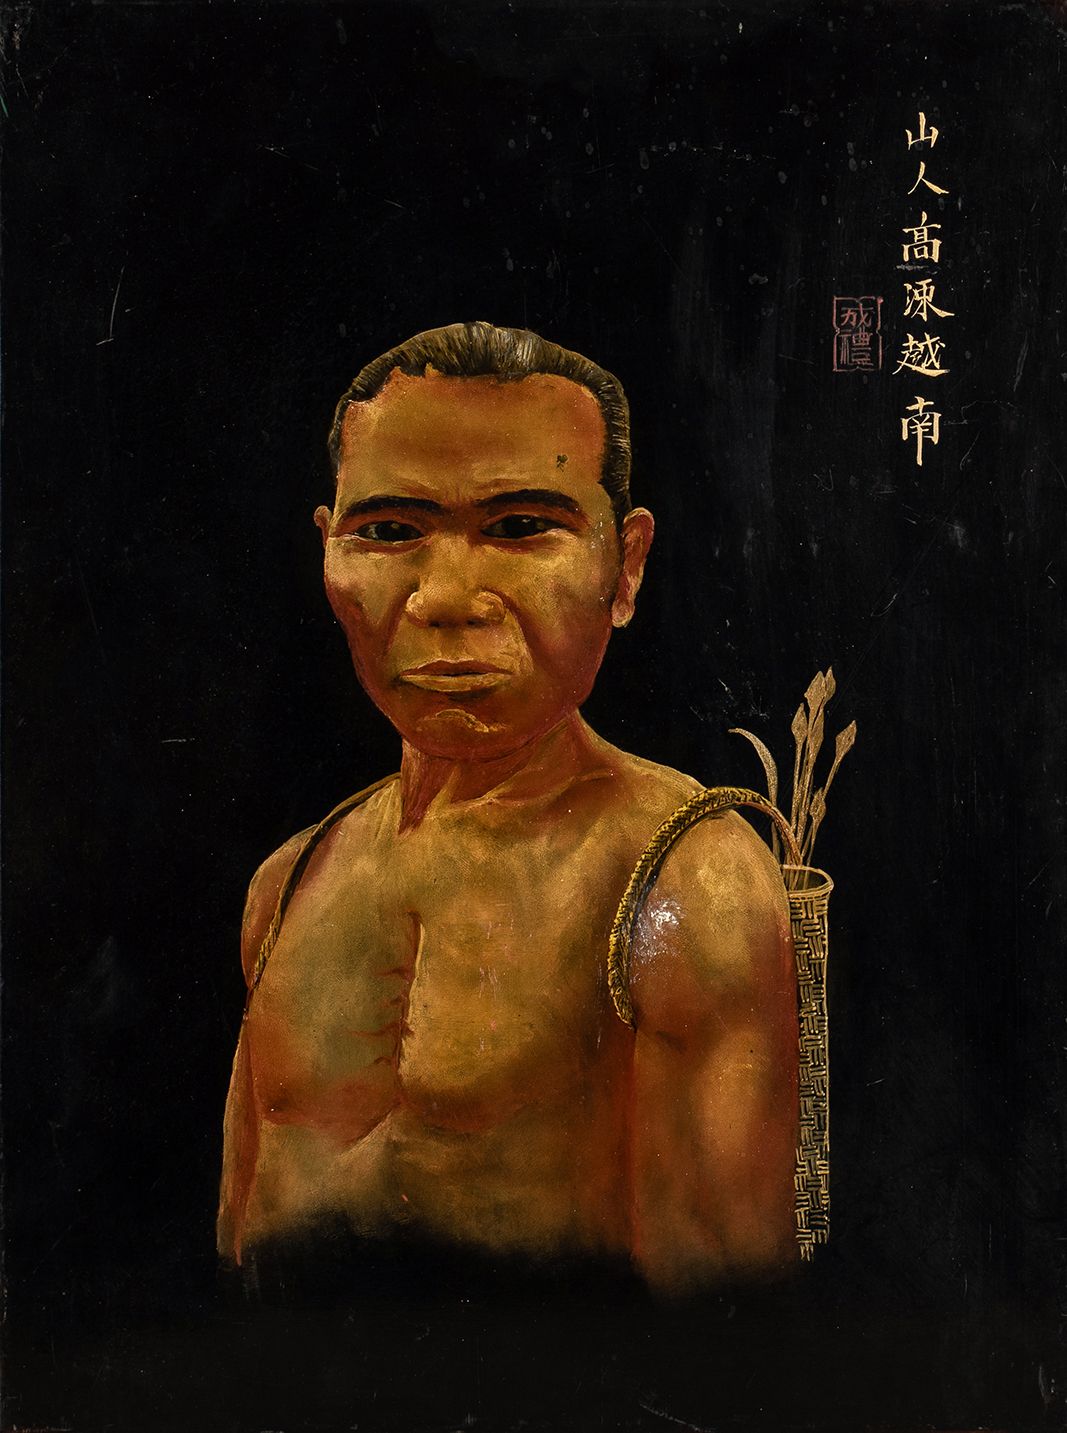 Null 
Porträt eines Bauern aus dem

gemalt auf schwarz lackierter Platte

schwar&hellip;